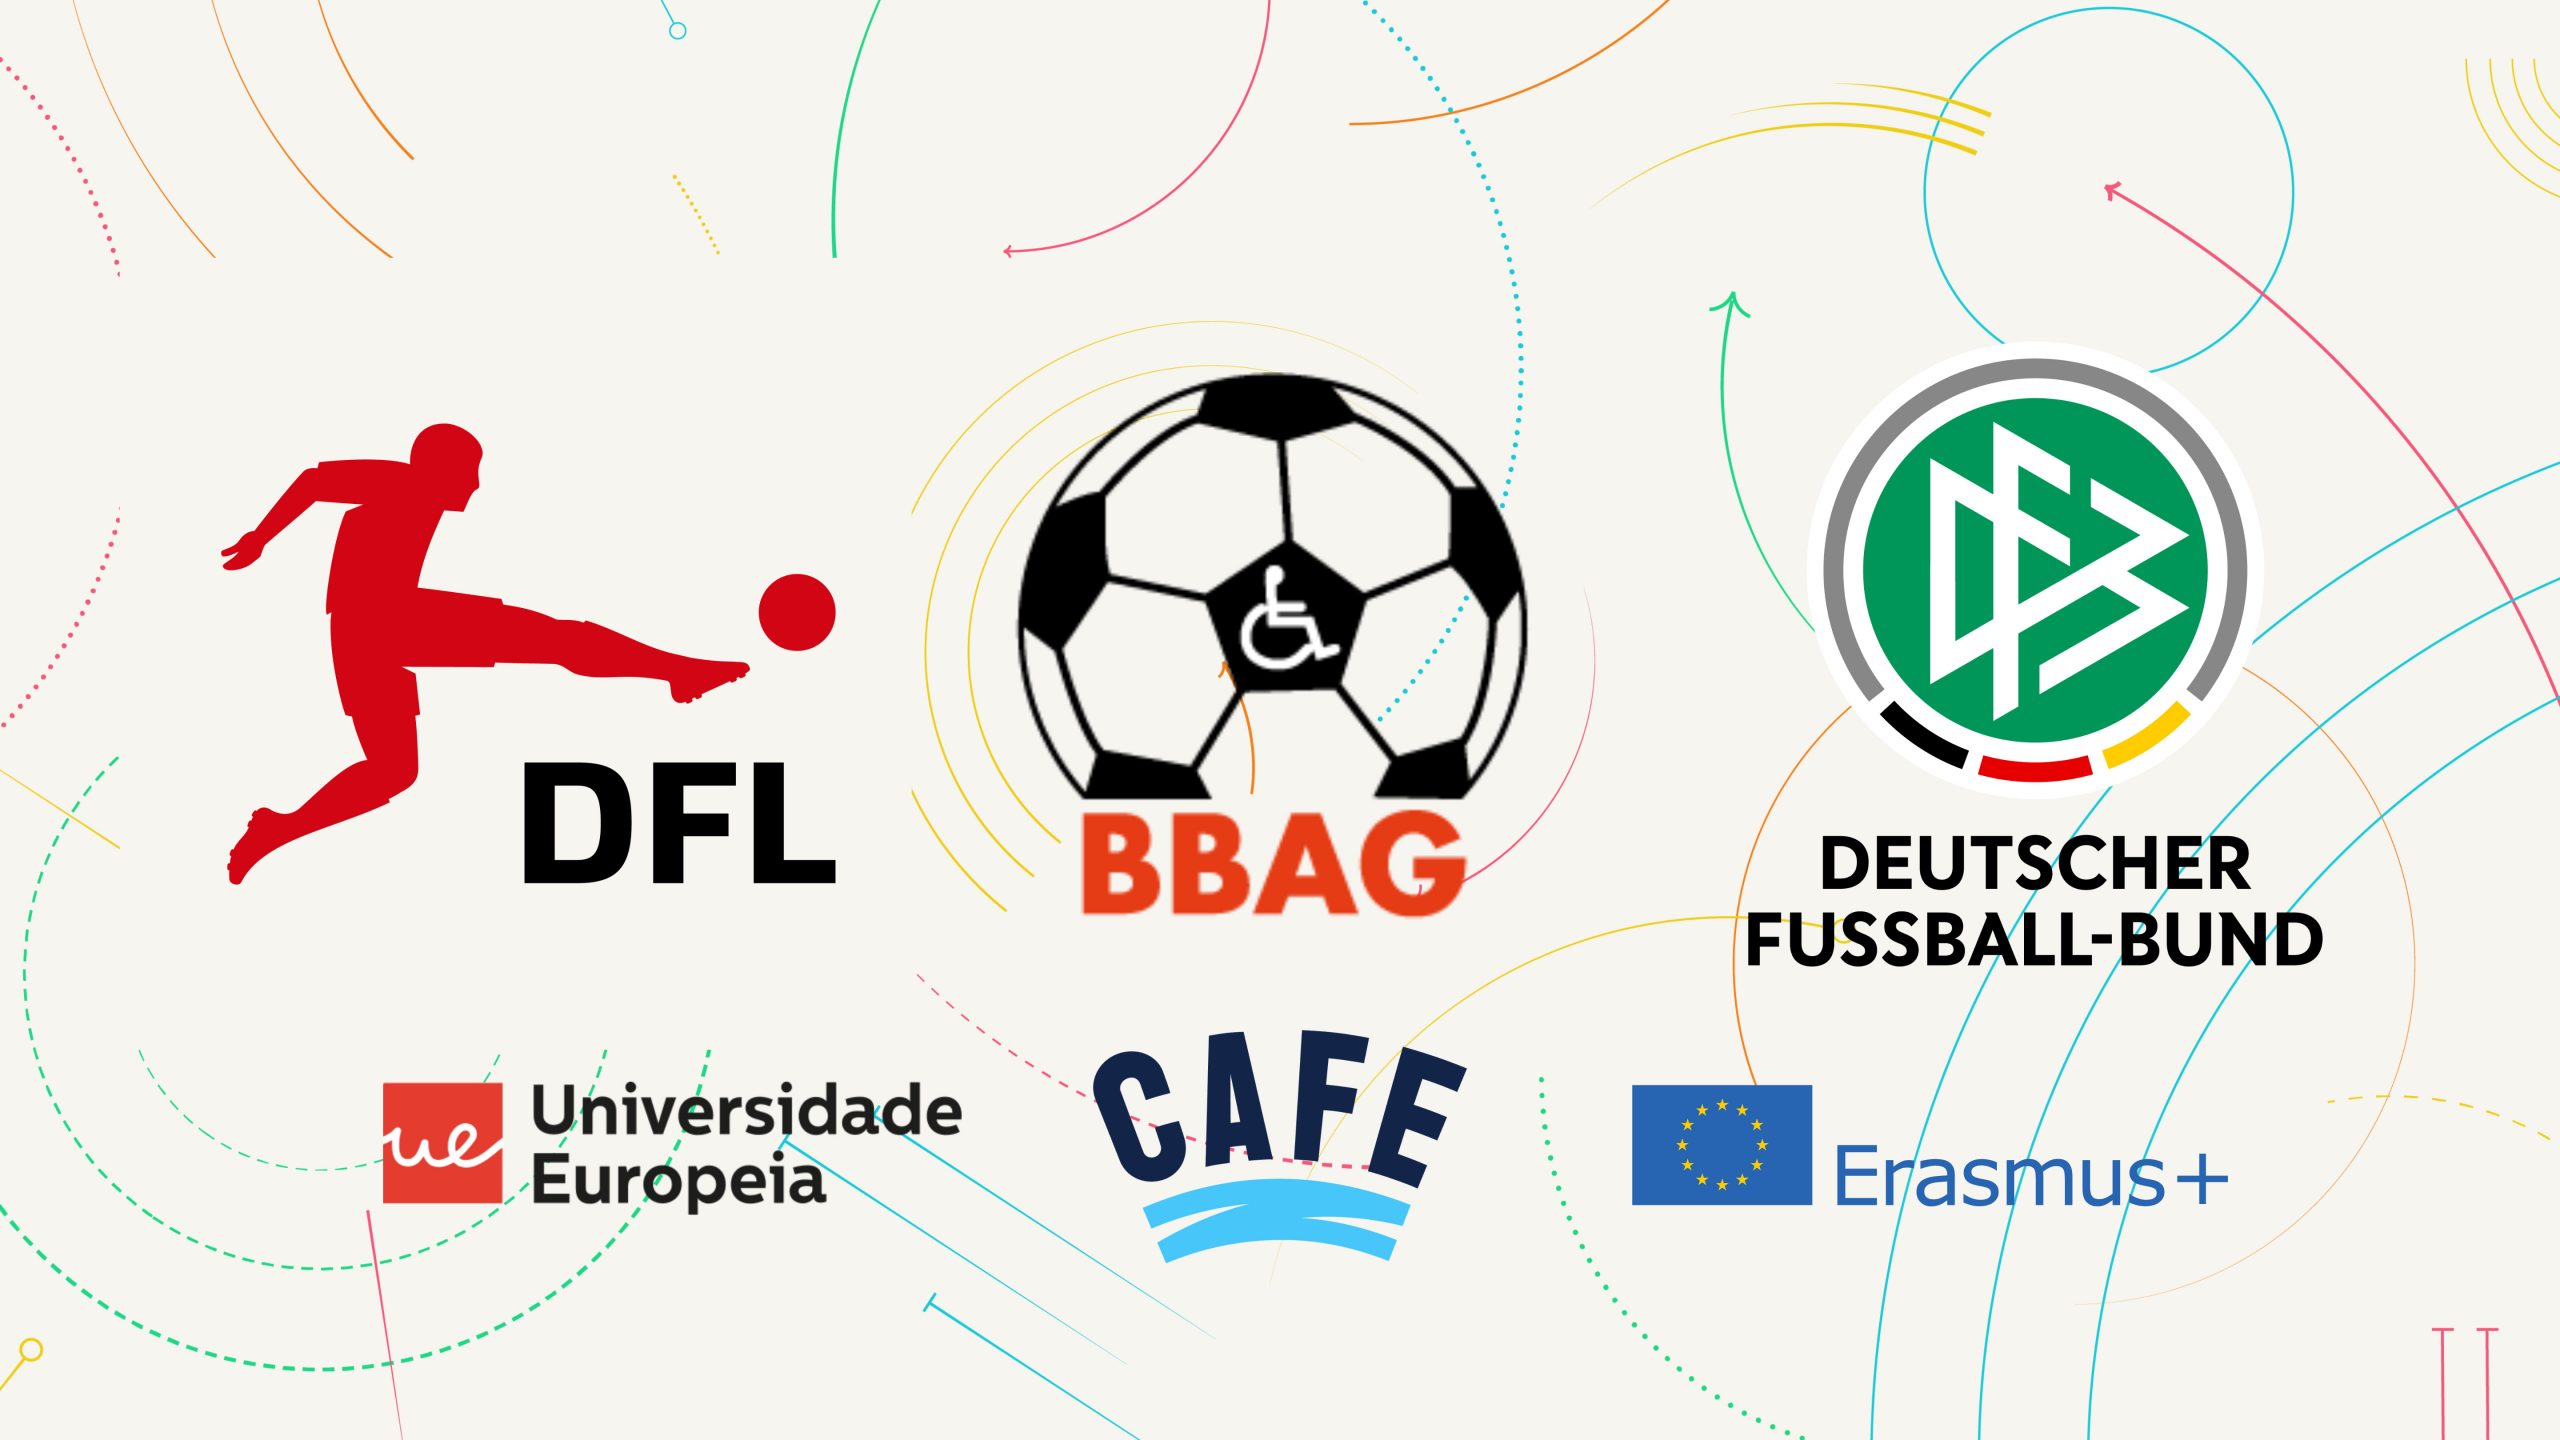 Grafik mit 6 Logos: Oben die Logos von DFL, BBAG und DFB. Darunter die Logos der Universidade Europeia sowie von CAFE und Erasmus+.